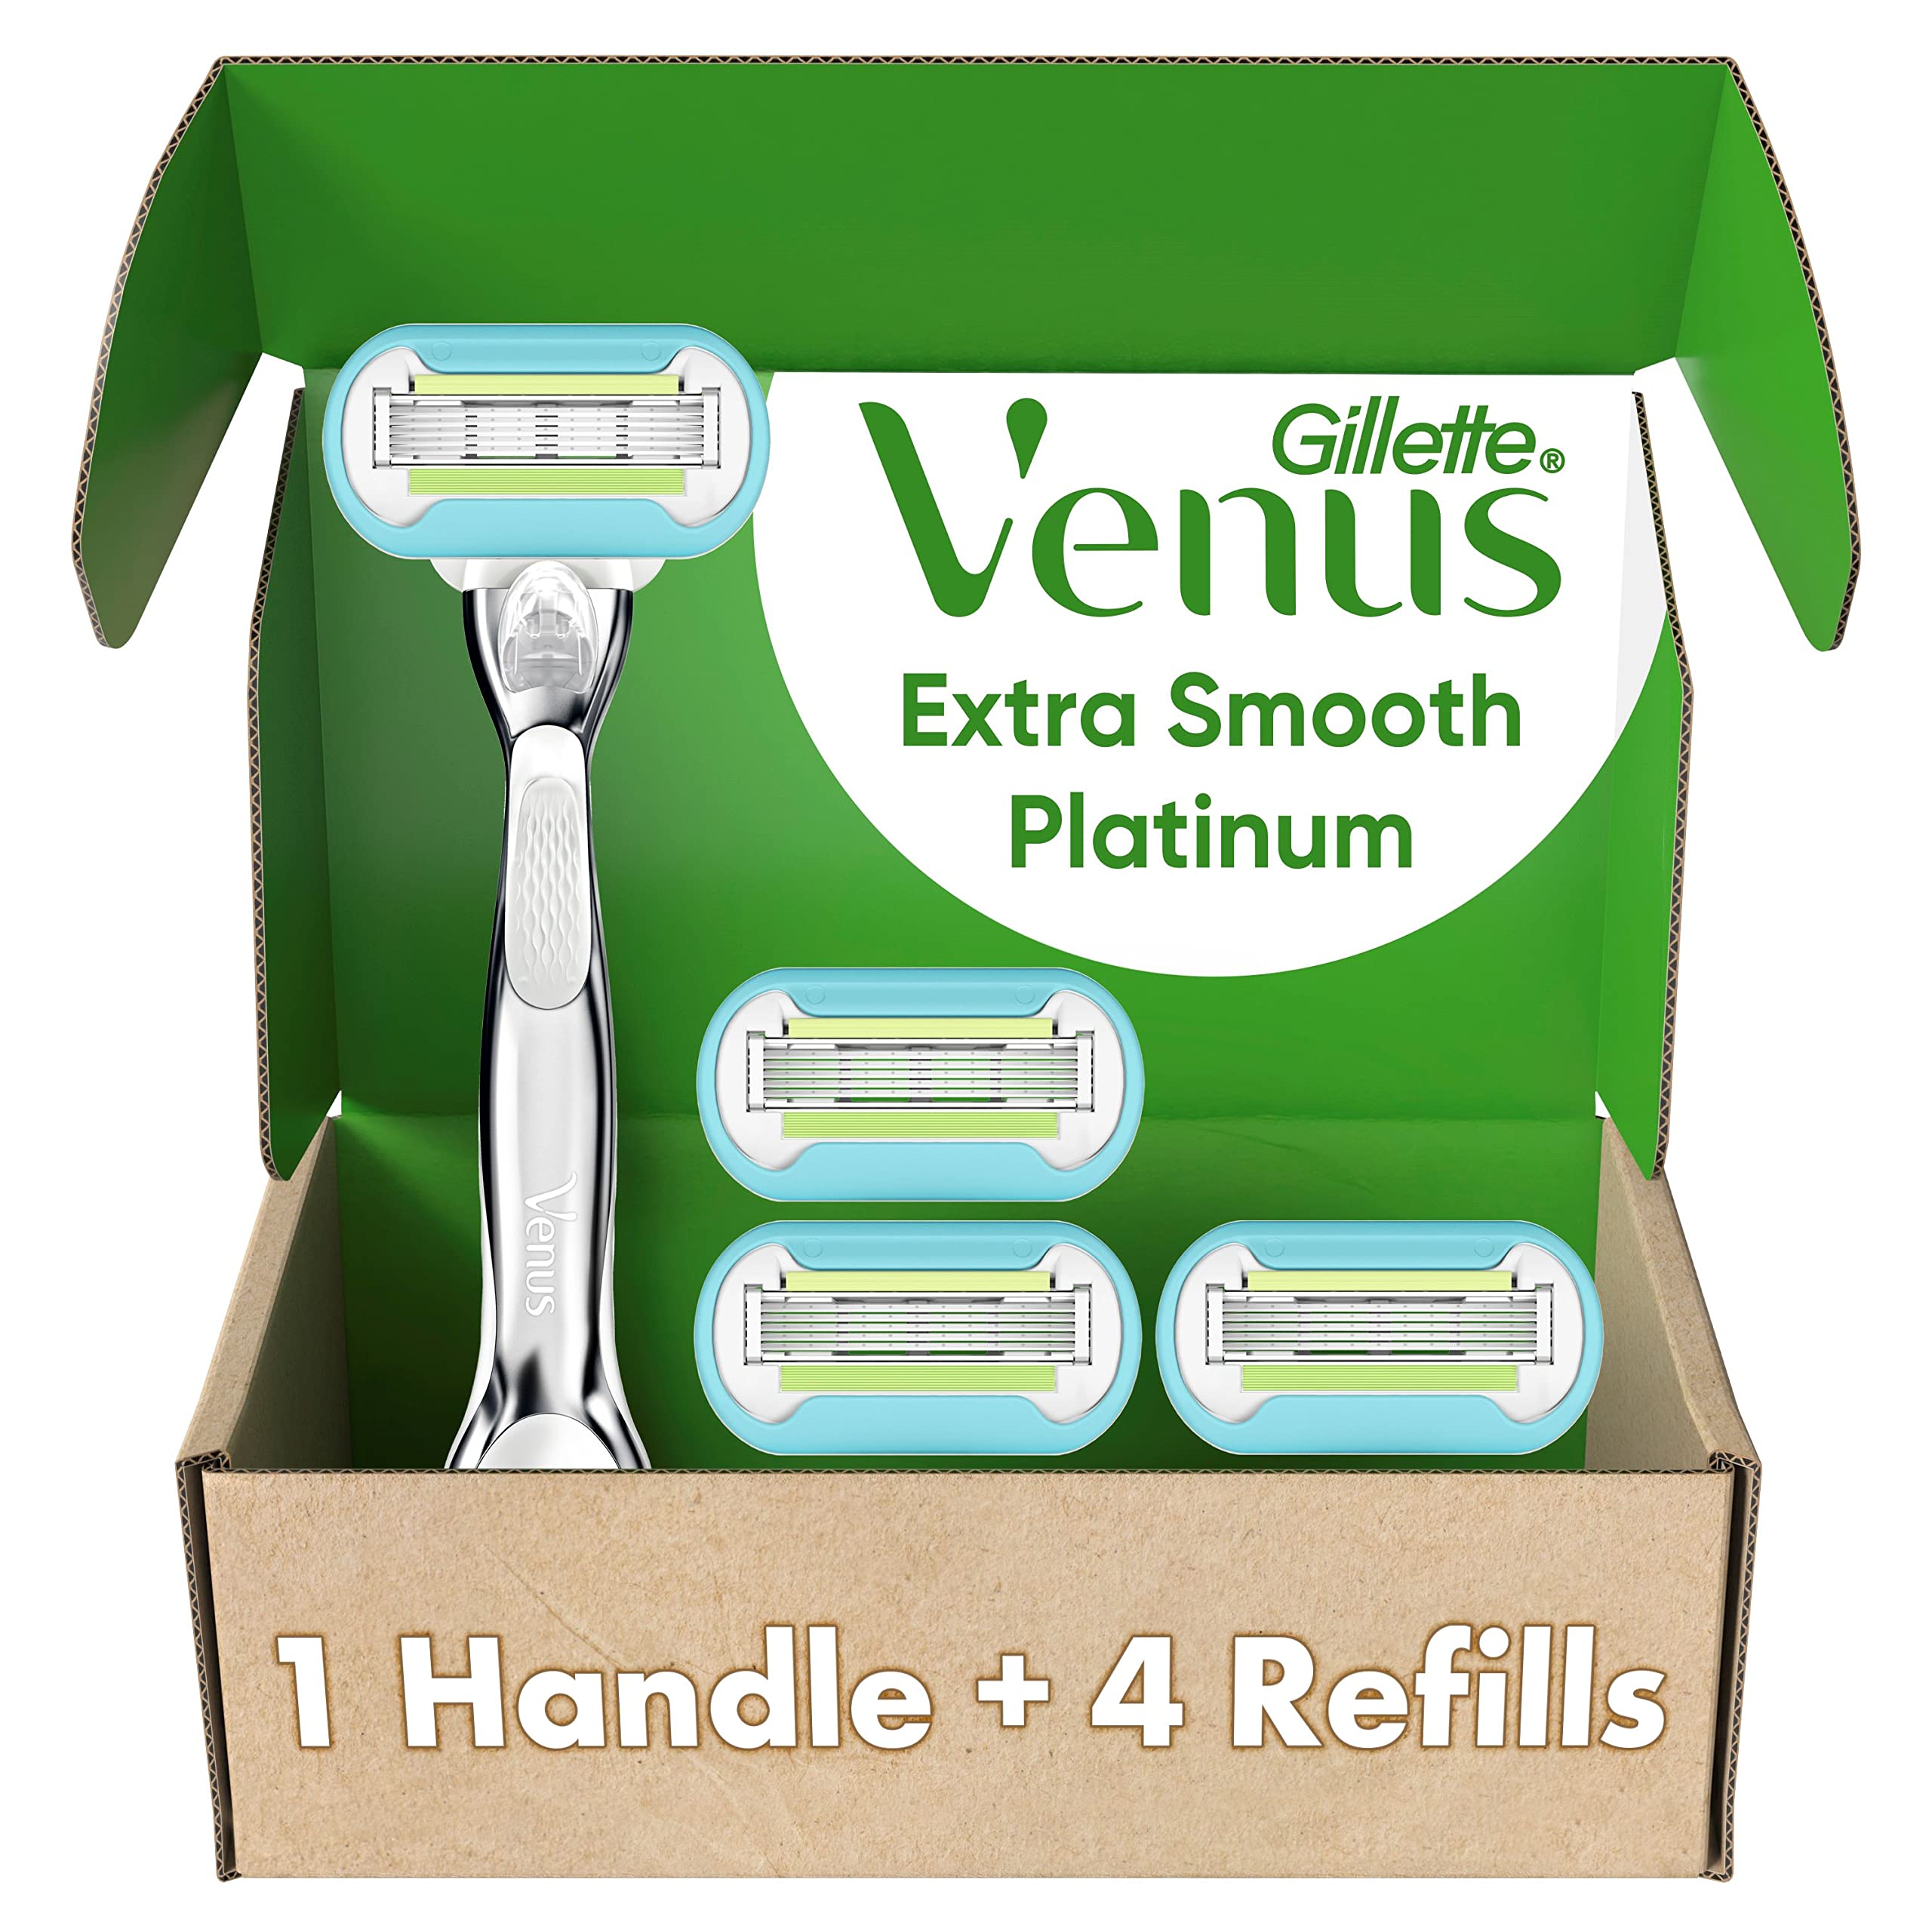 Gillette Venus Platinum Extra Smooth Razors for Women